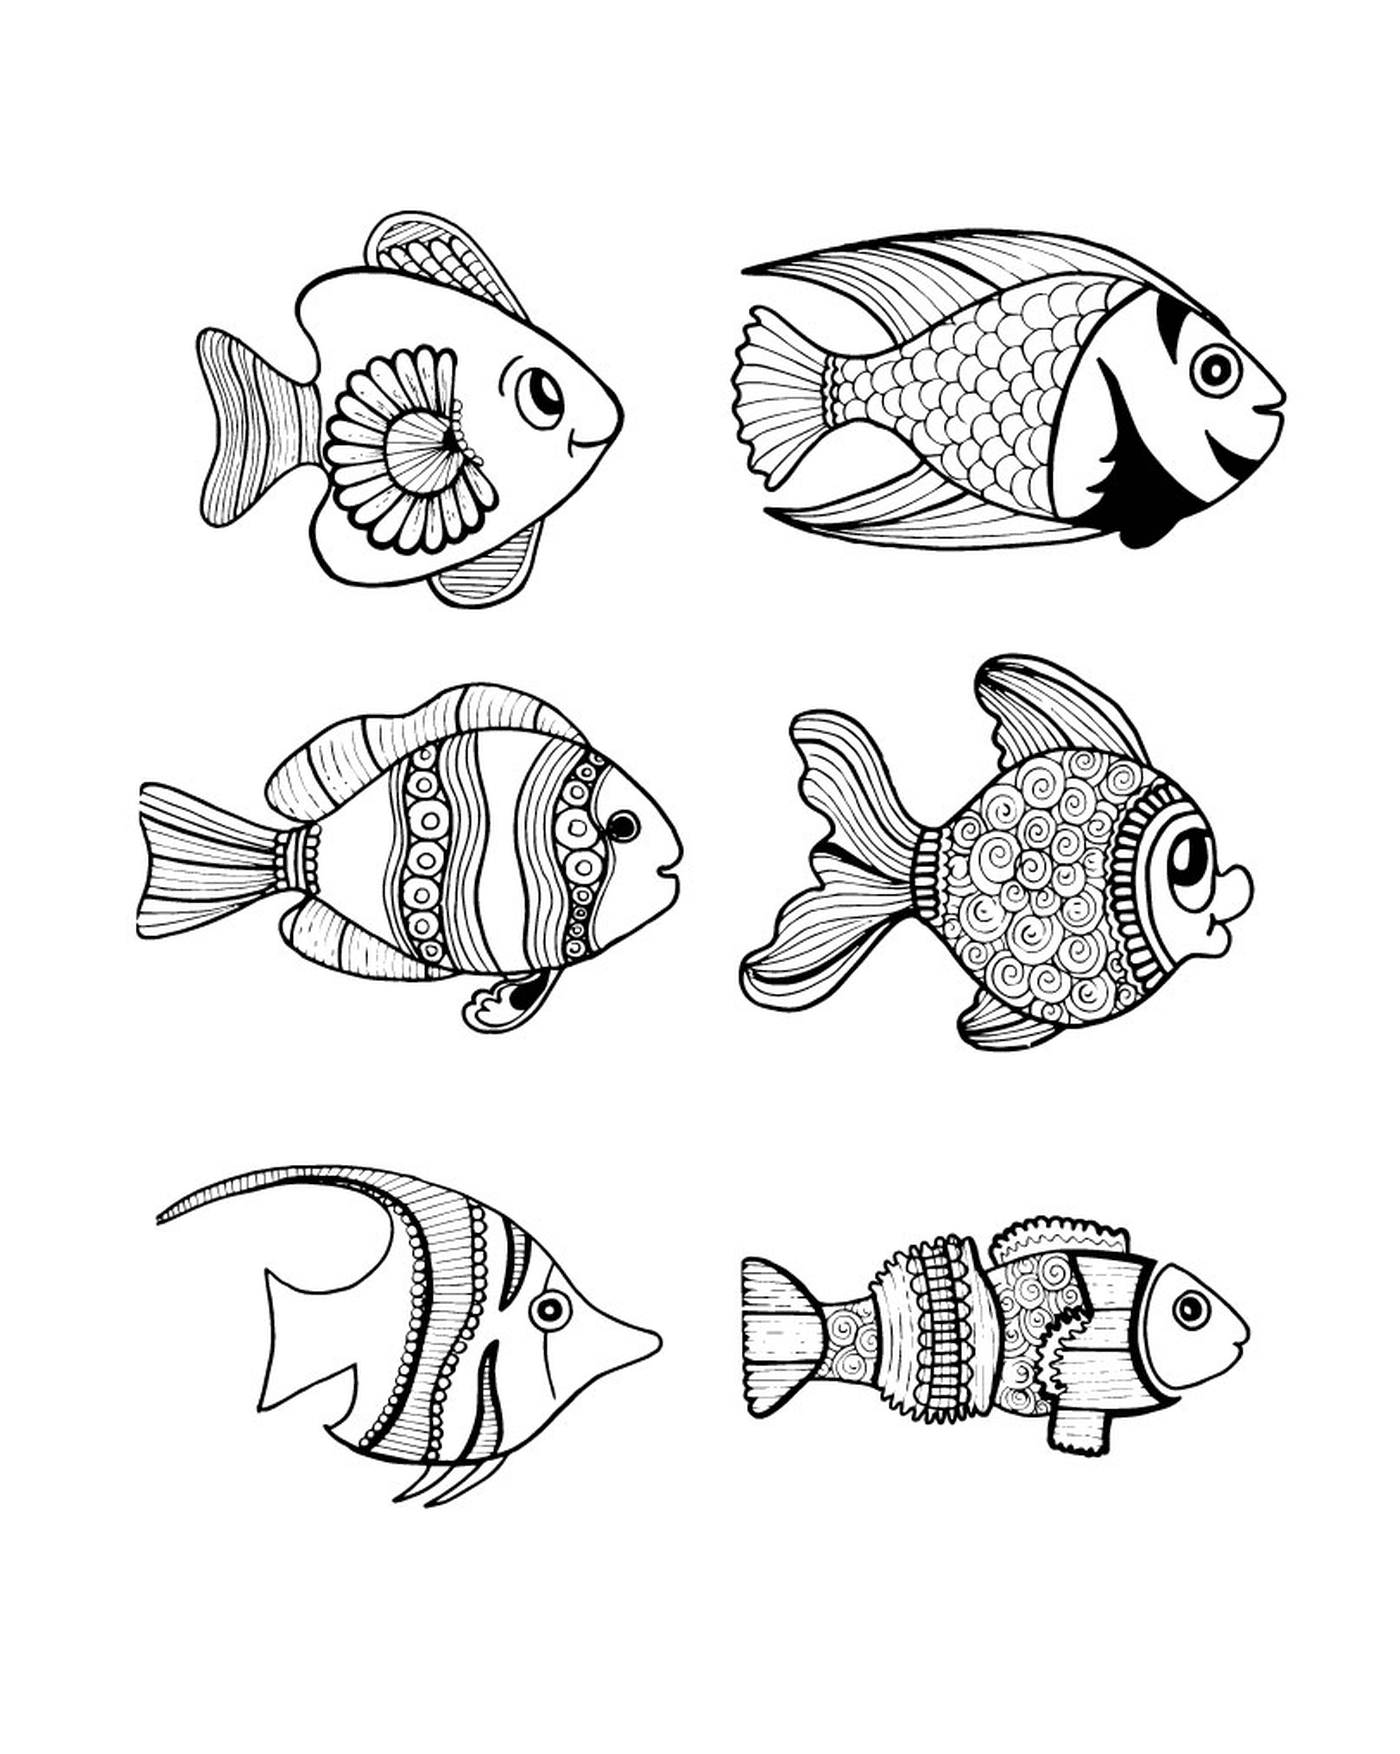  مجموعة من ست رسومات للأسماك السوداء والأبيض 